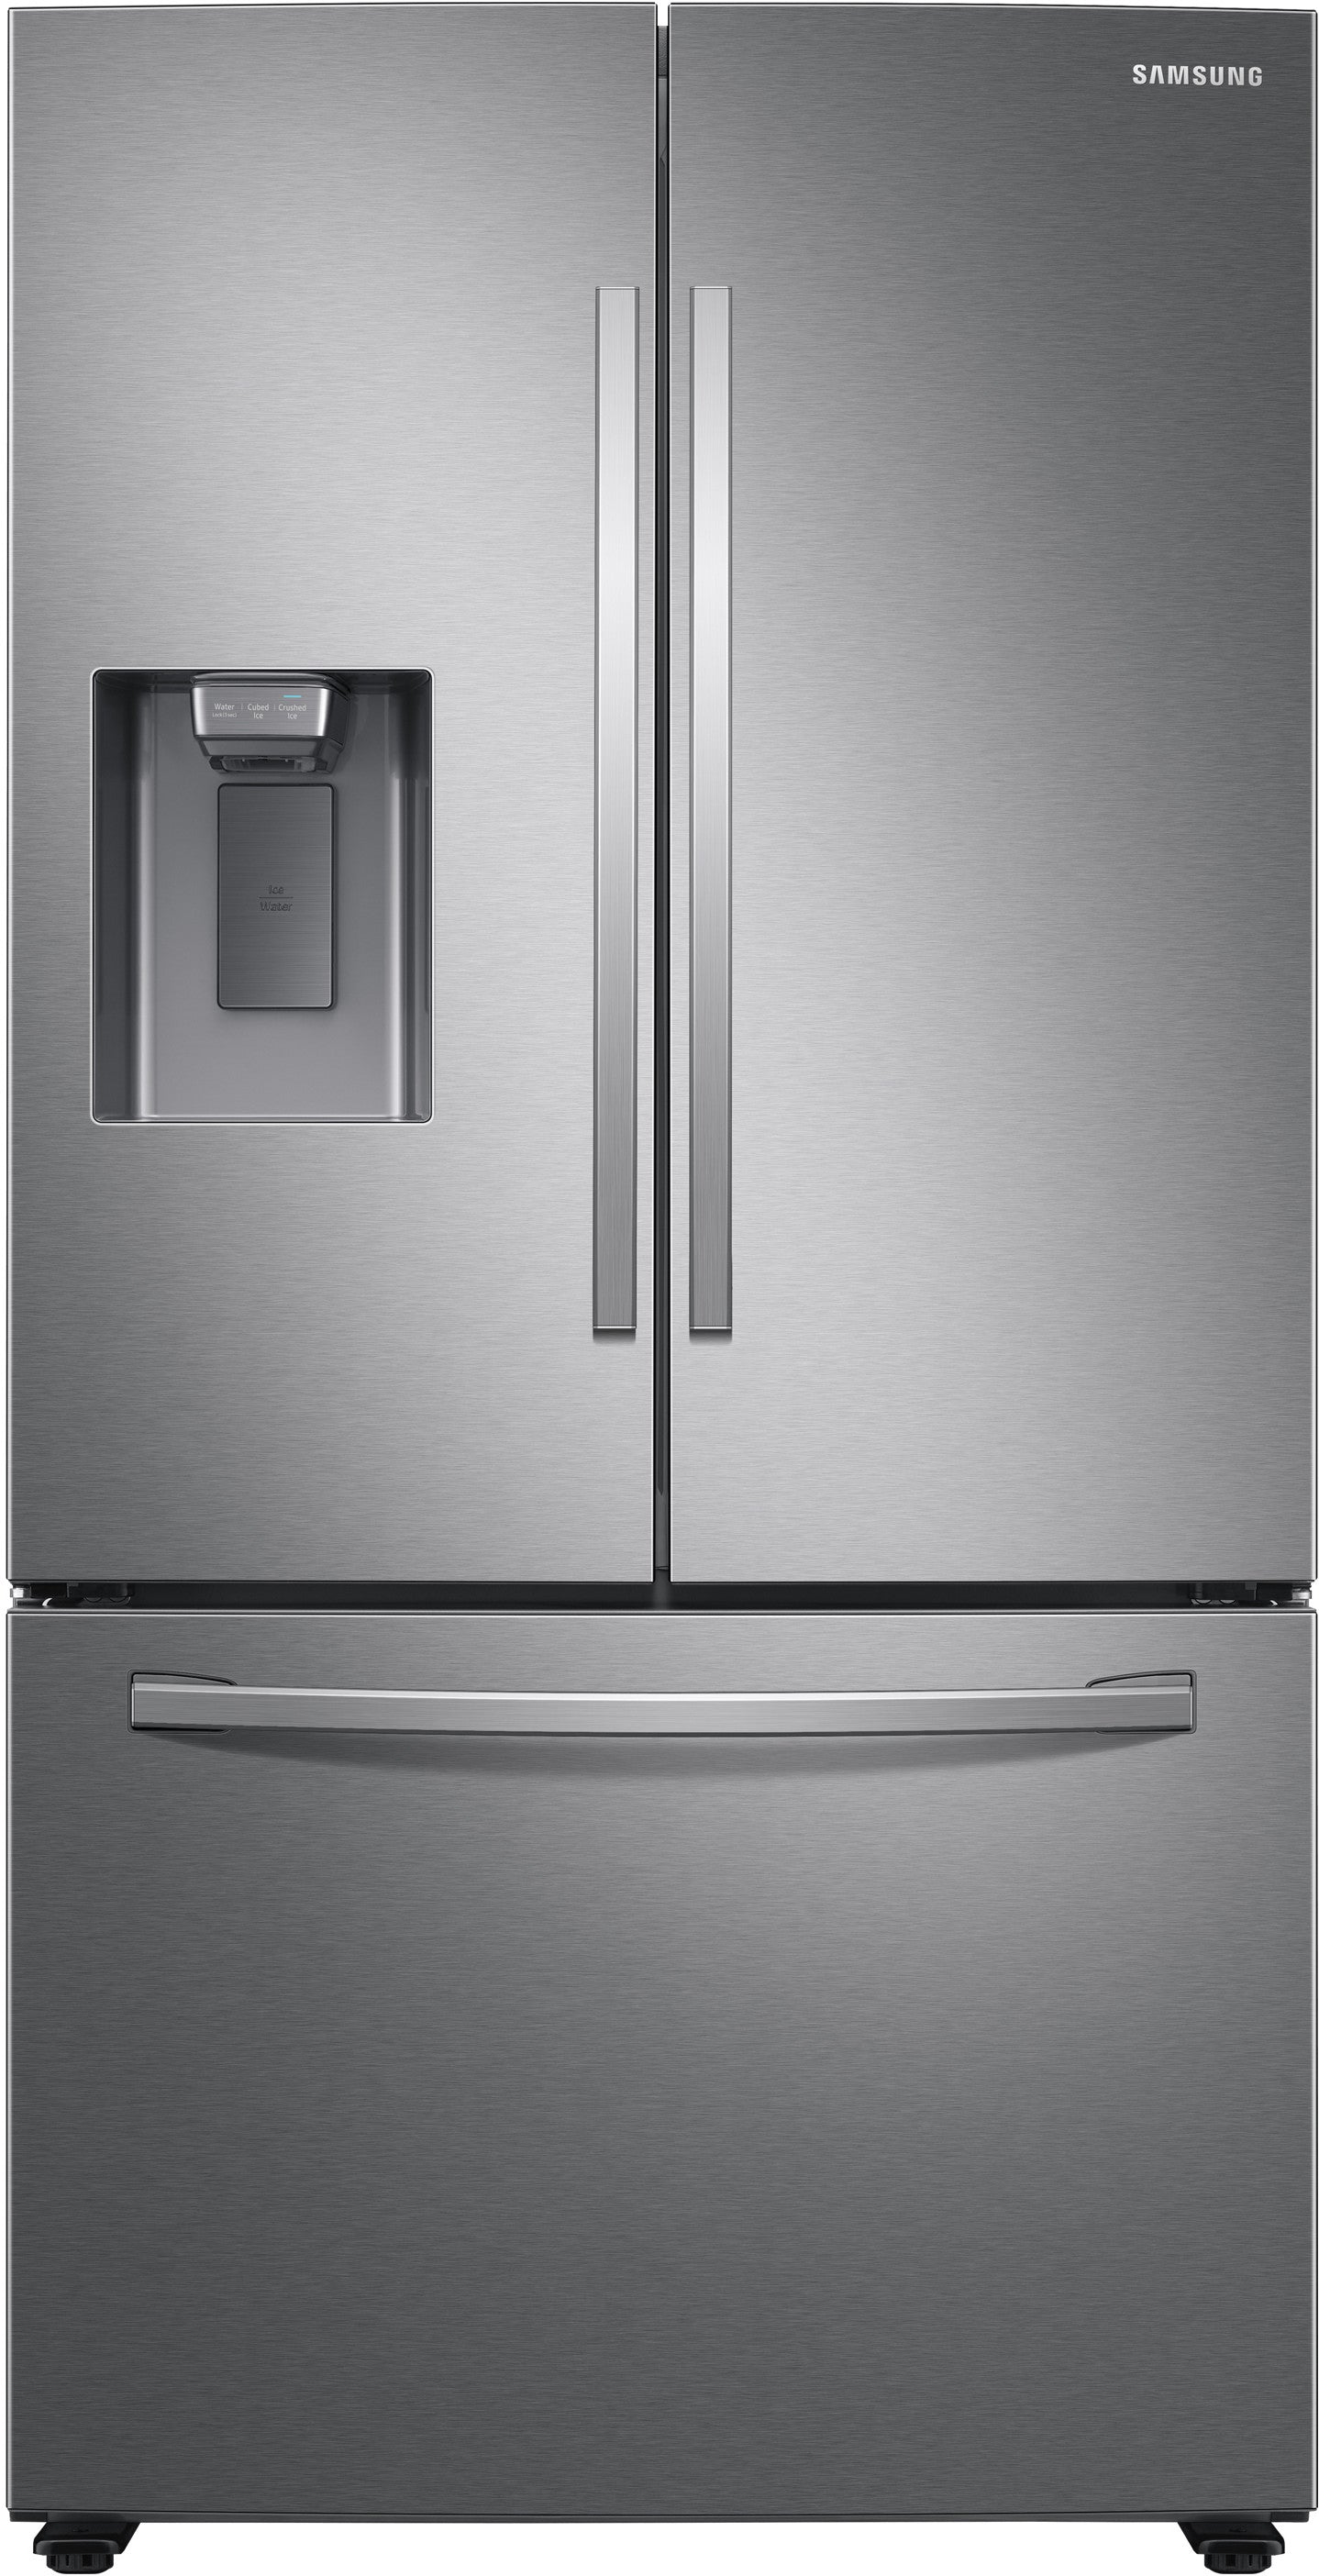 Samsung RF27T5201SR/AA 27 Cu. Ft. Large Capacity 3-Door French Door Refrigerator